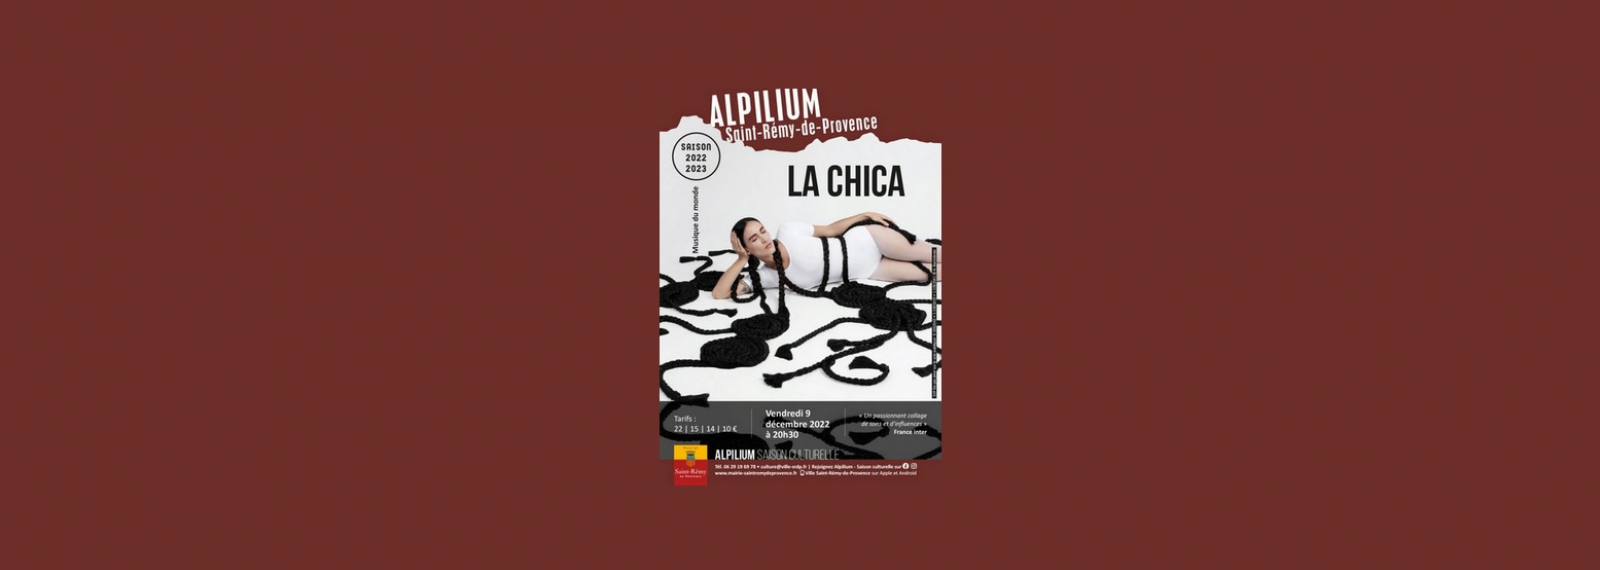 Alpilium : La Chica